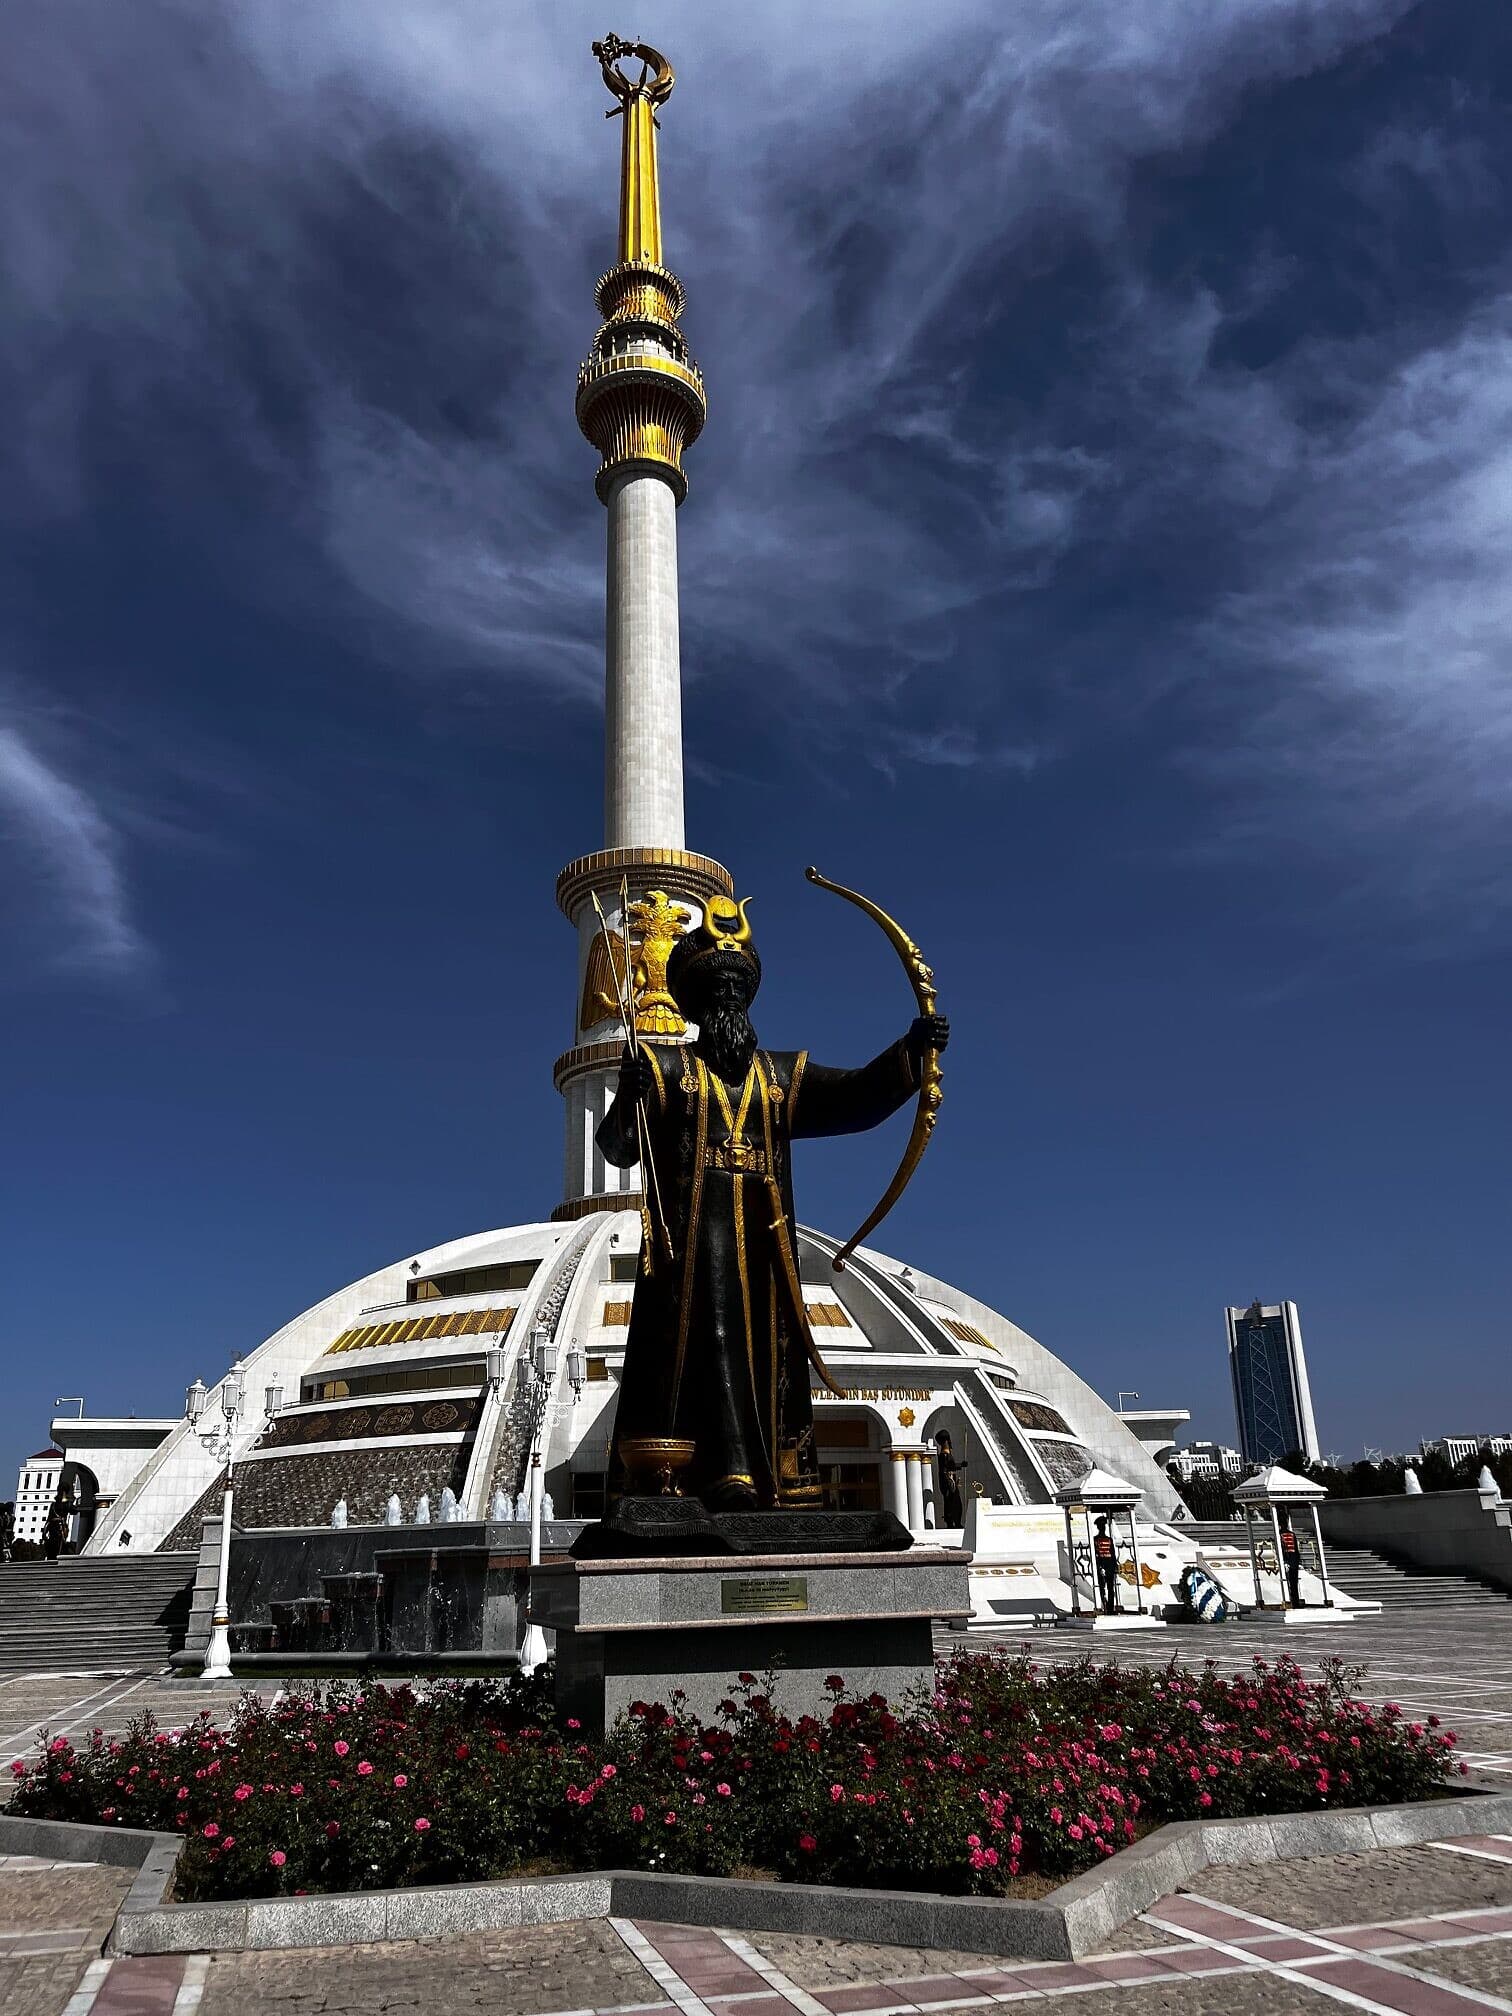 כיכר העצמאות, שהוקמה לכבוד עצמאותה של טורקמניסטן מברית המועצות (צילום: טל שניידר)